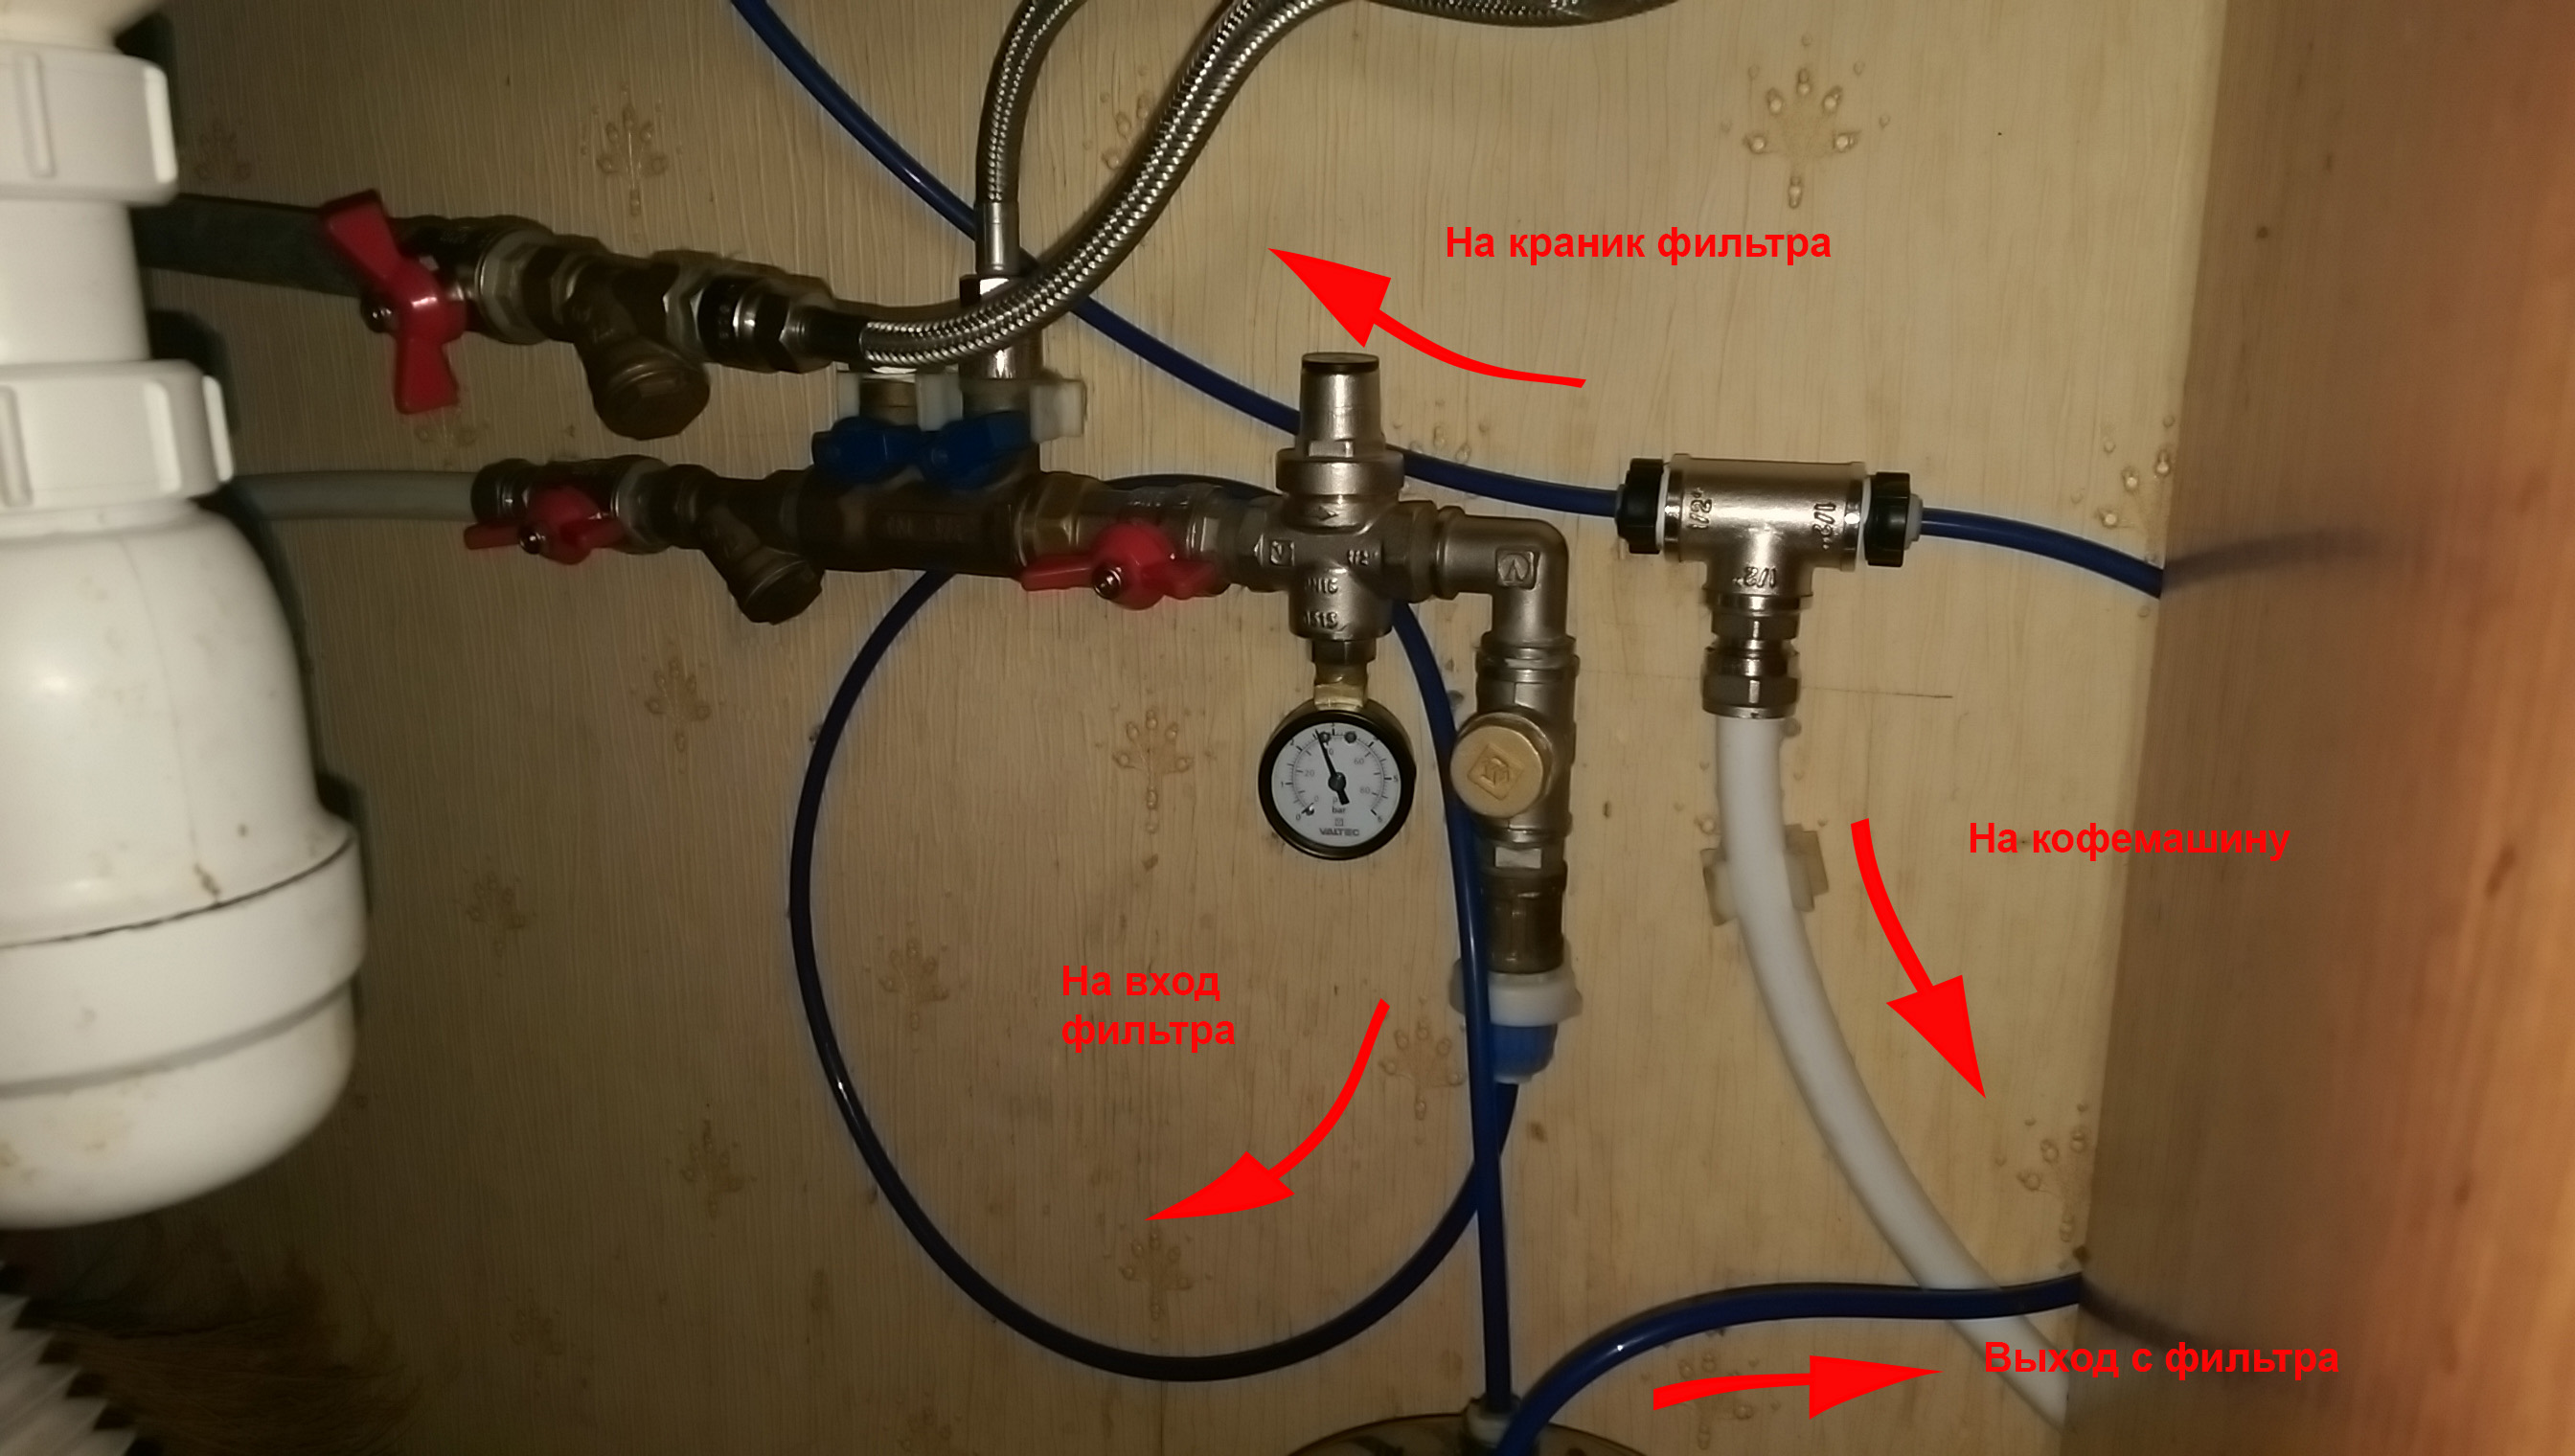 Модуль подключения к водопроводу